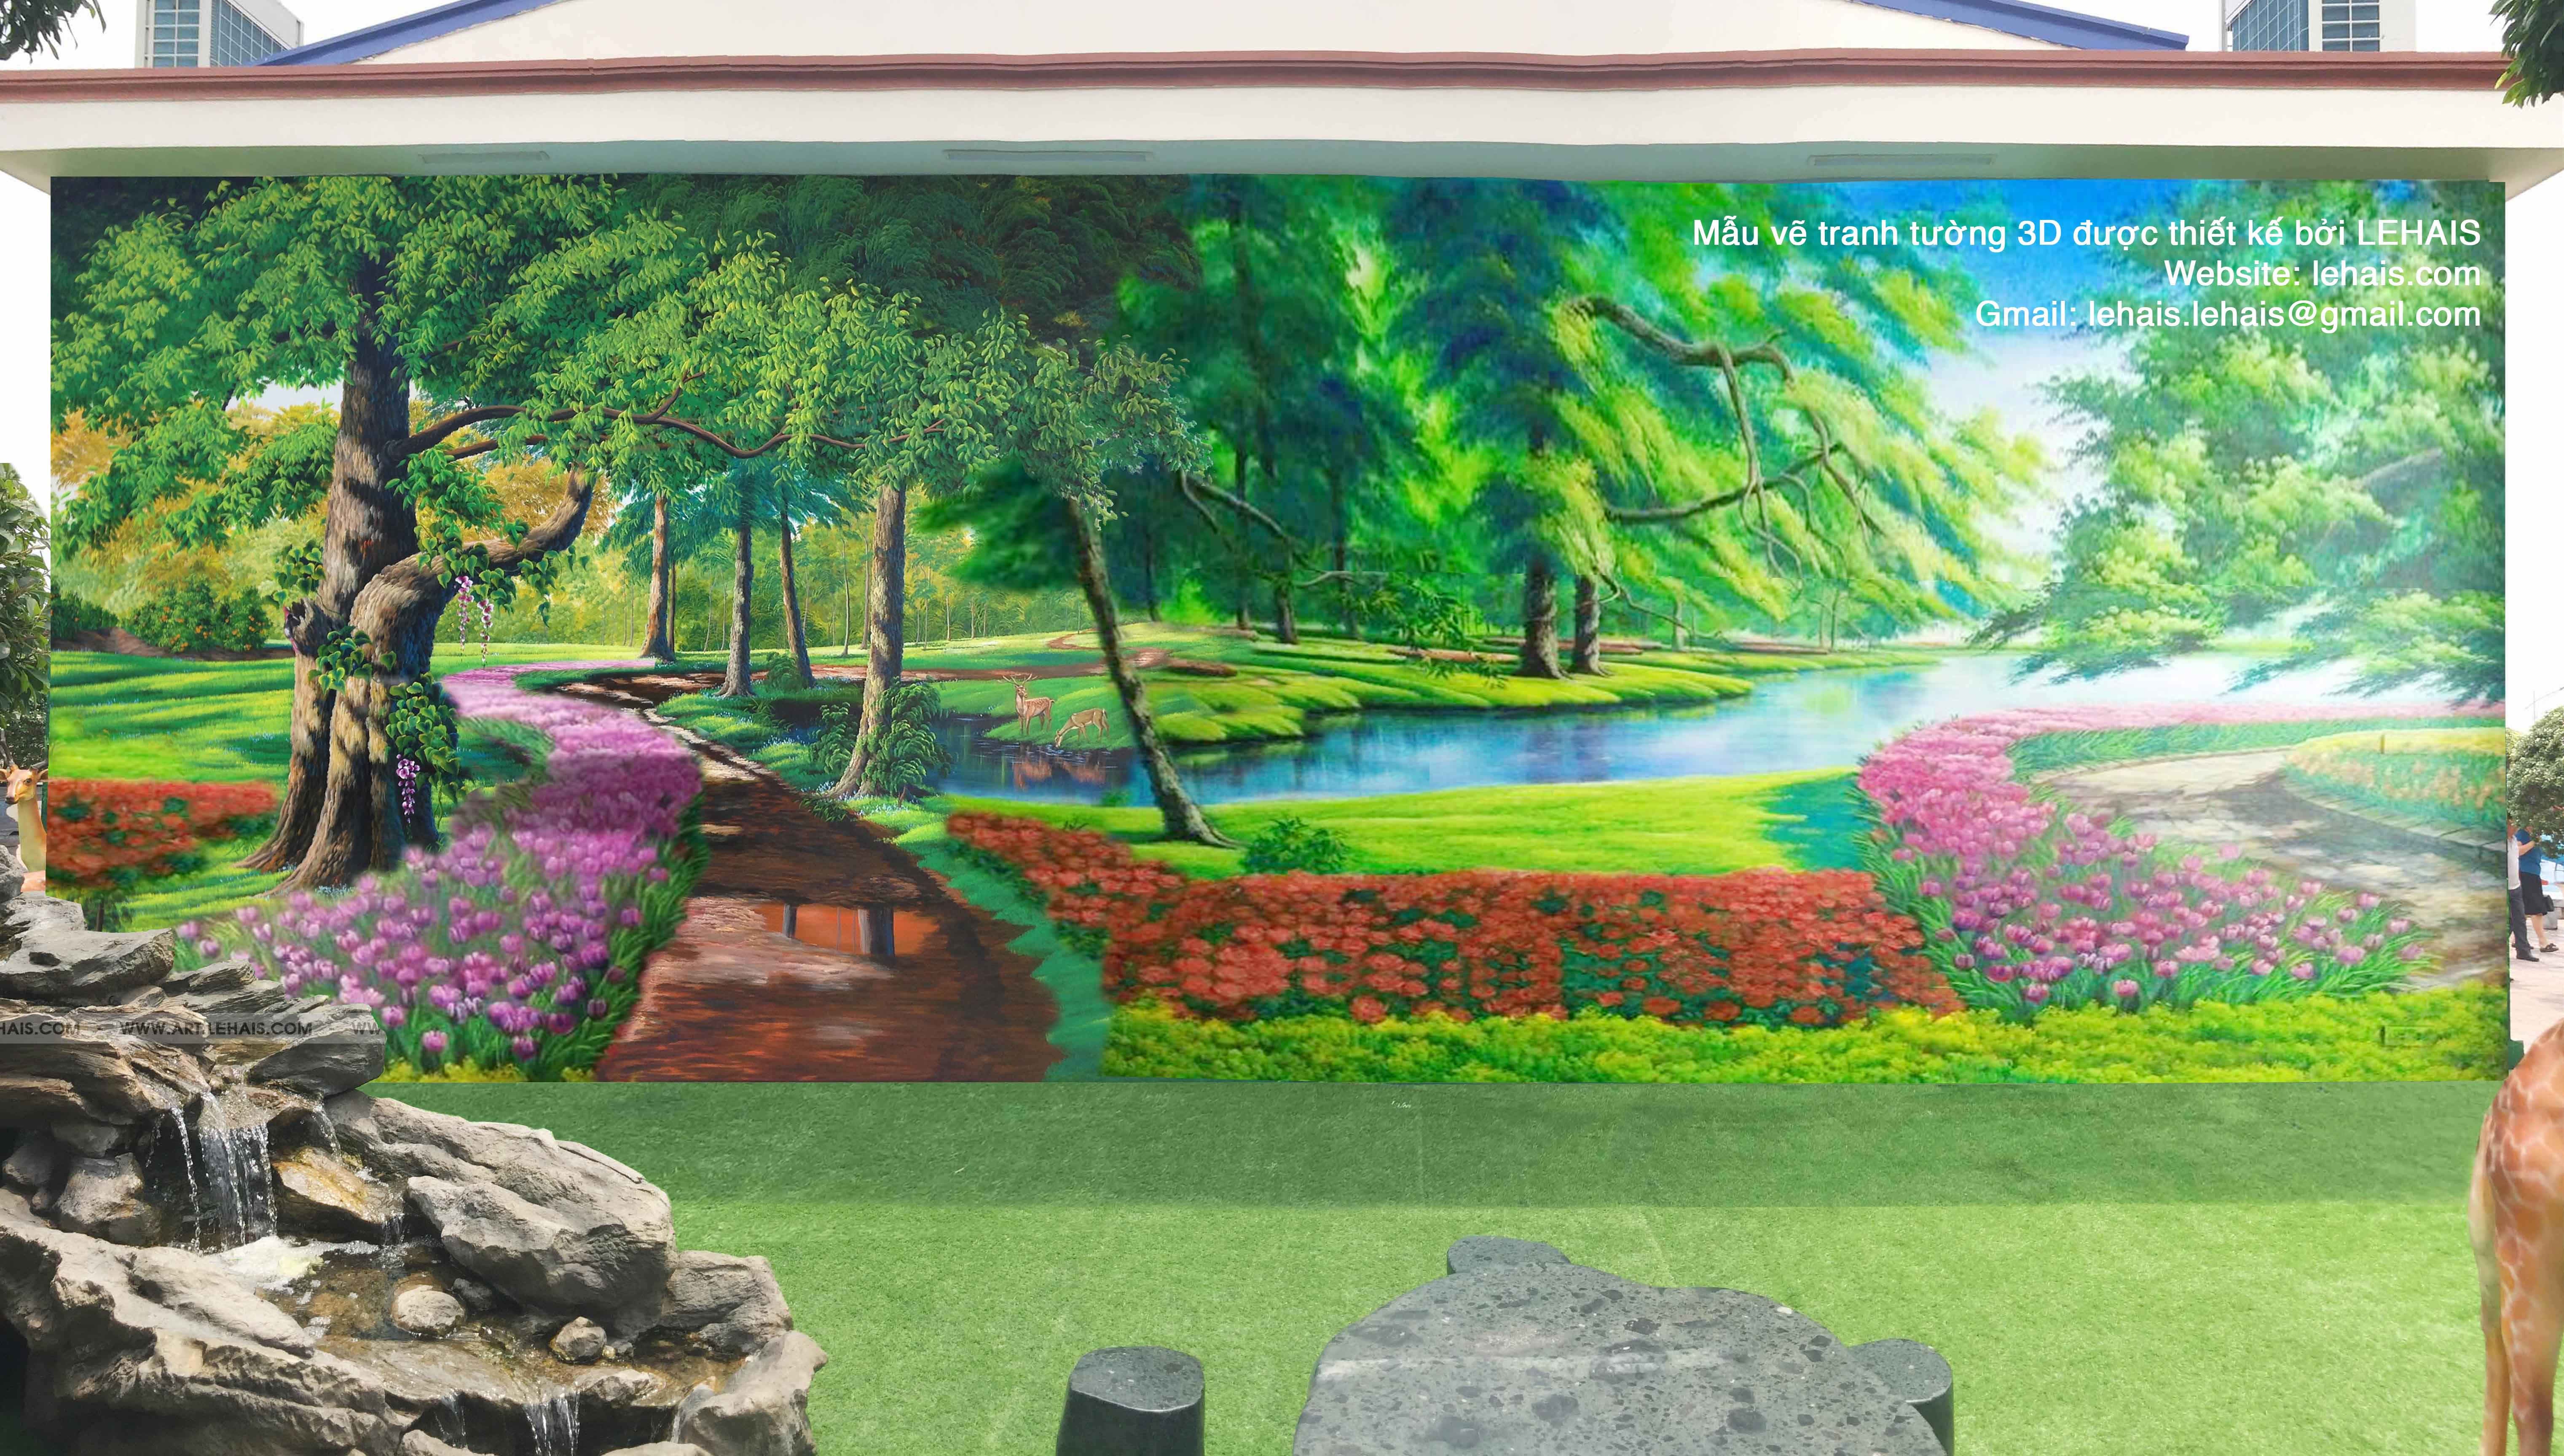 Thiết kế mẫu vẽ tranh tường 3D cho khách hàng tại Sông Công, Thái Nguyên 1